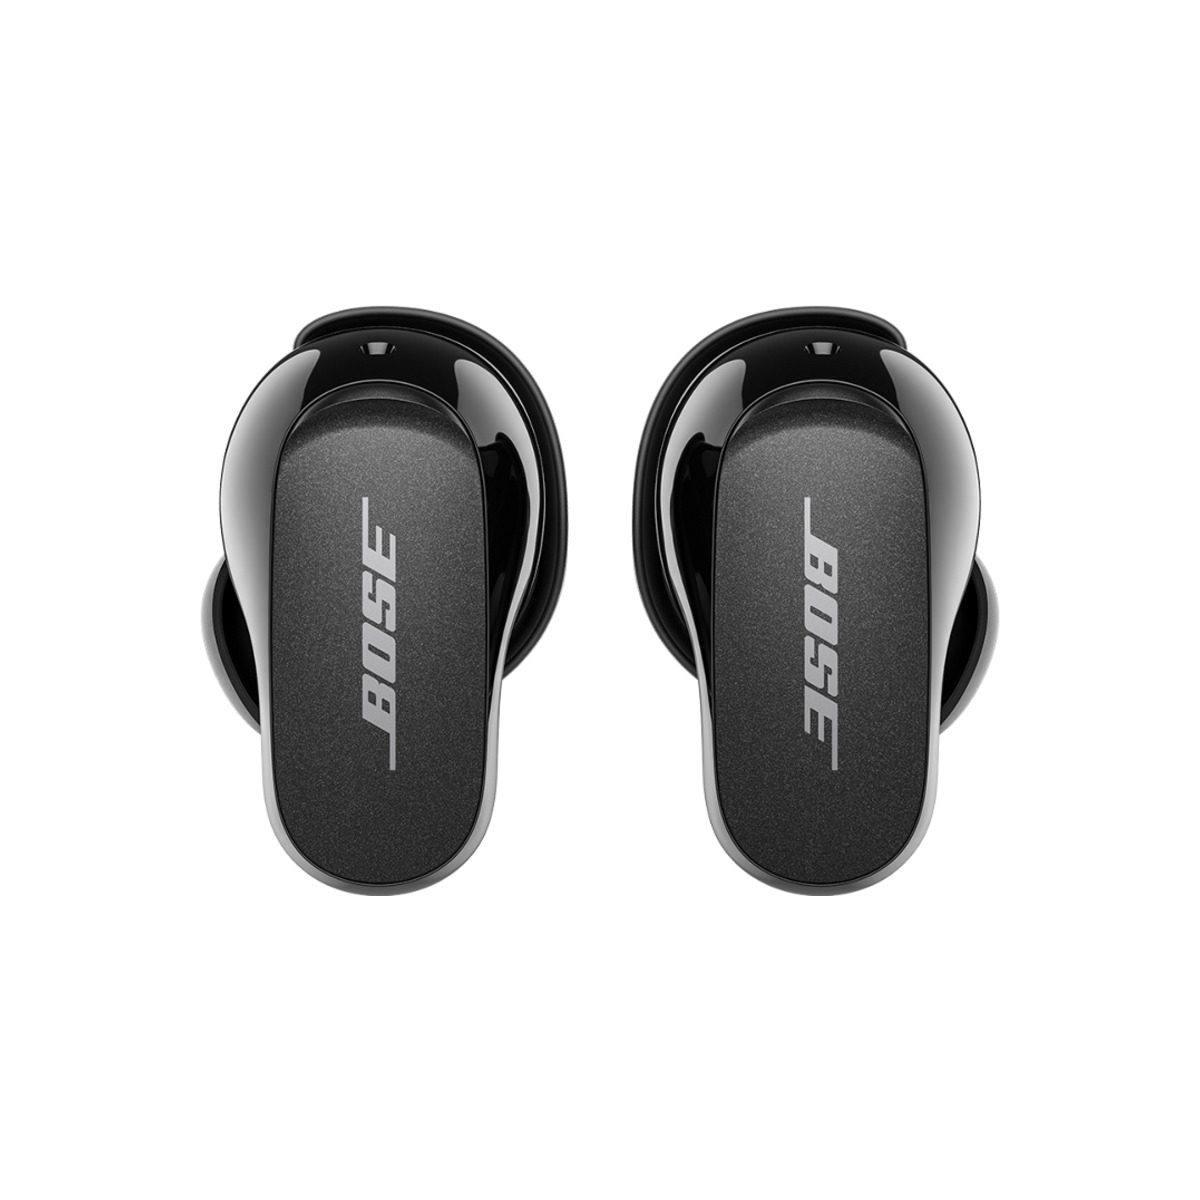 Bezdrátová sluchátka Bose QuietComfort Earbuds II - černá | iSTYLE